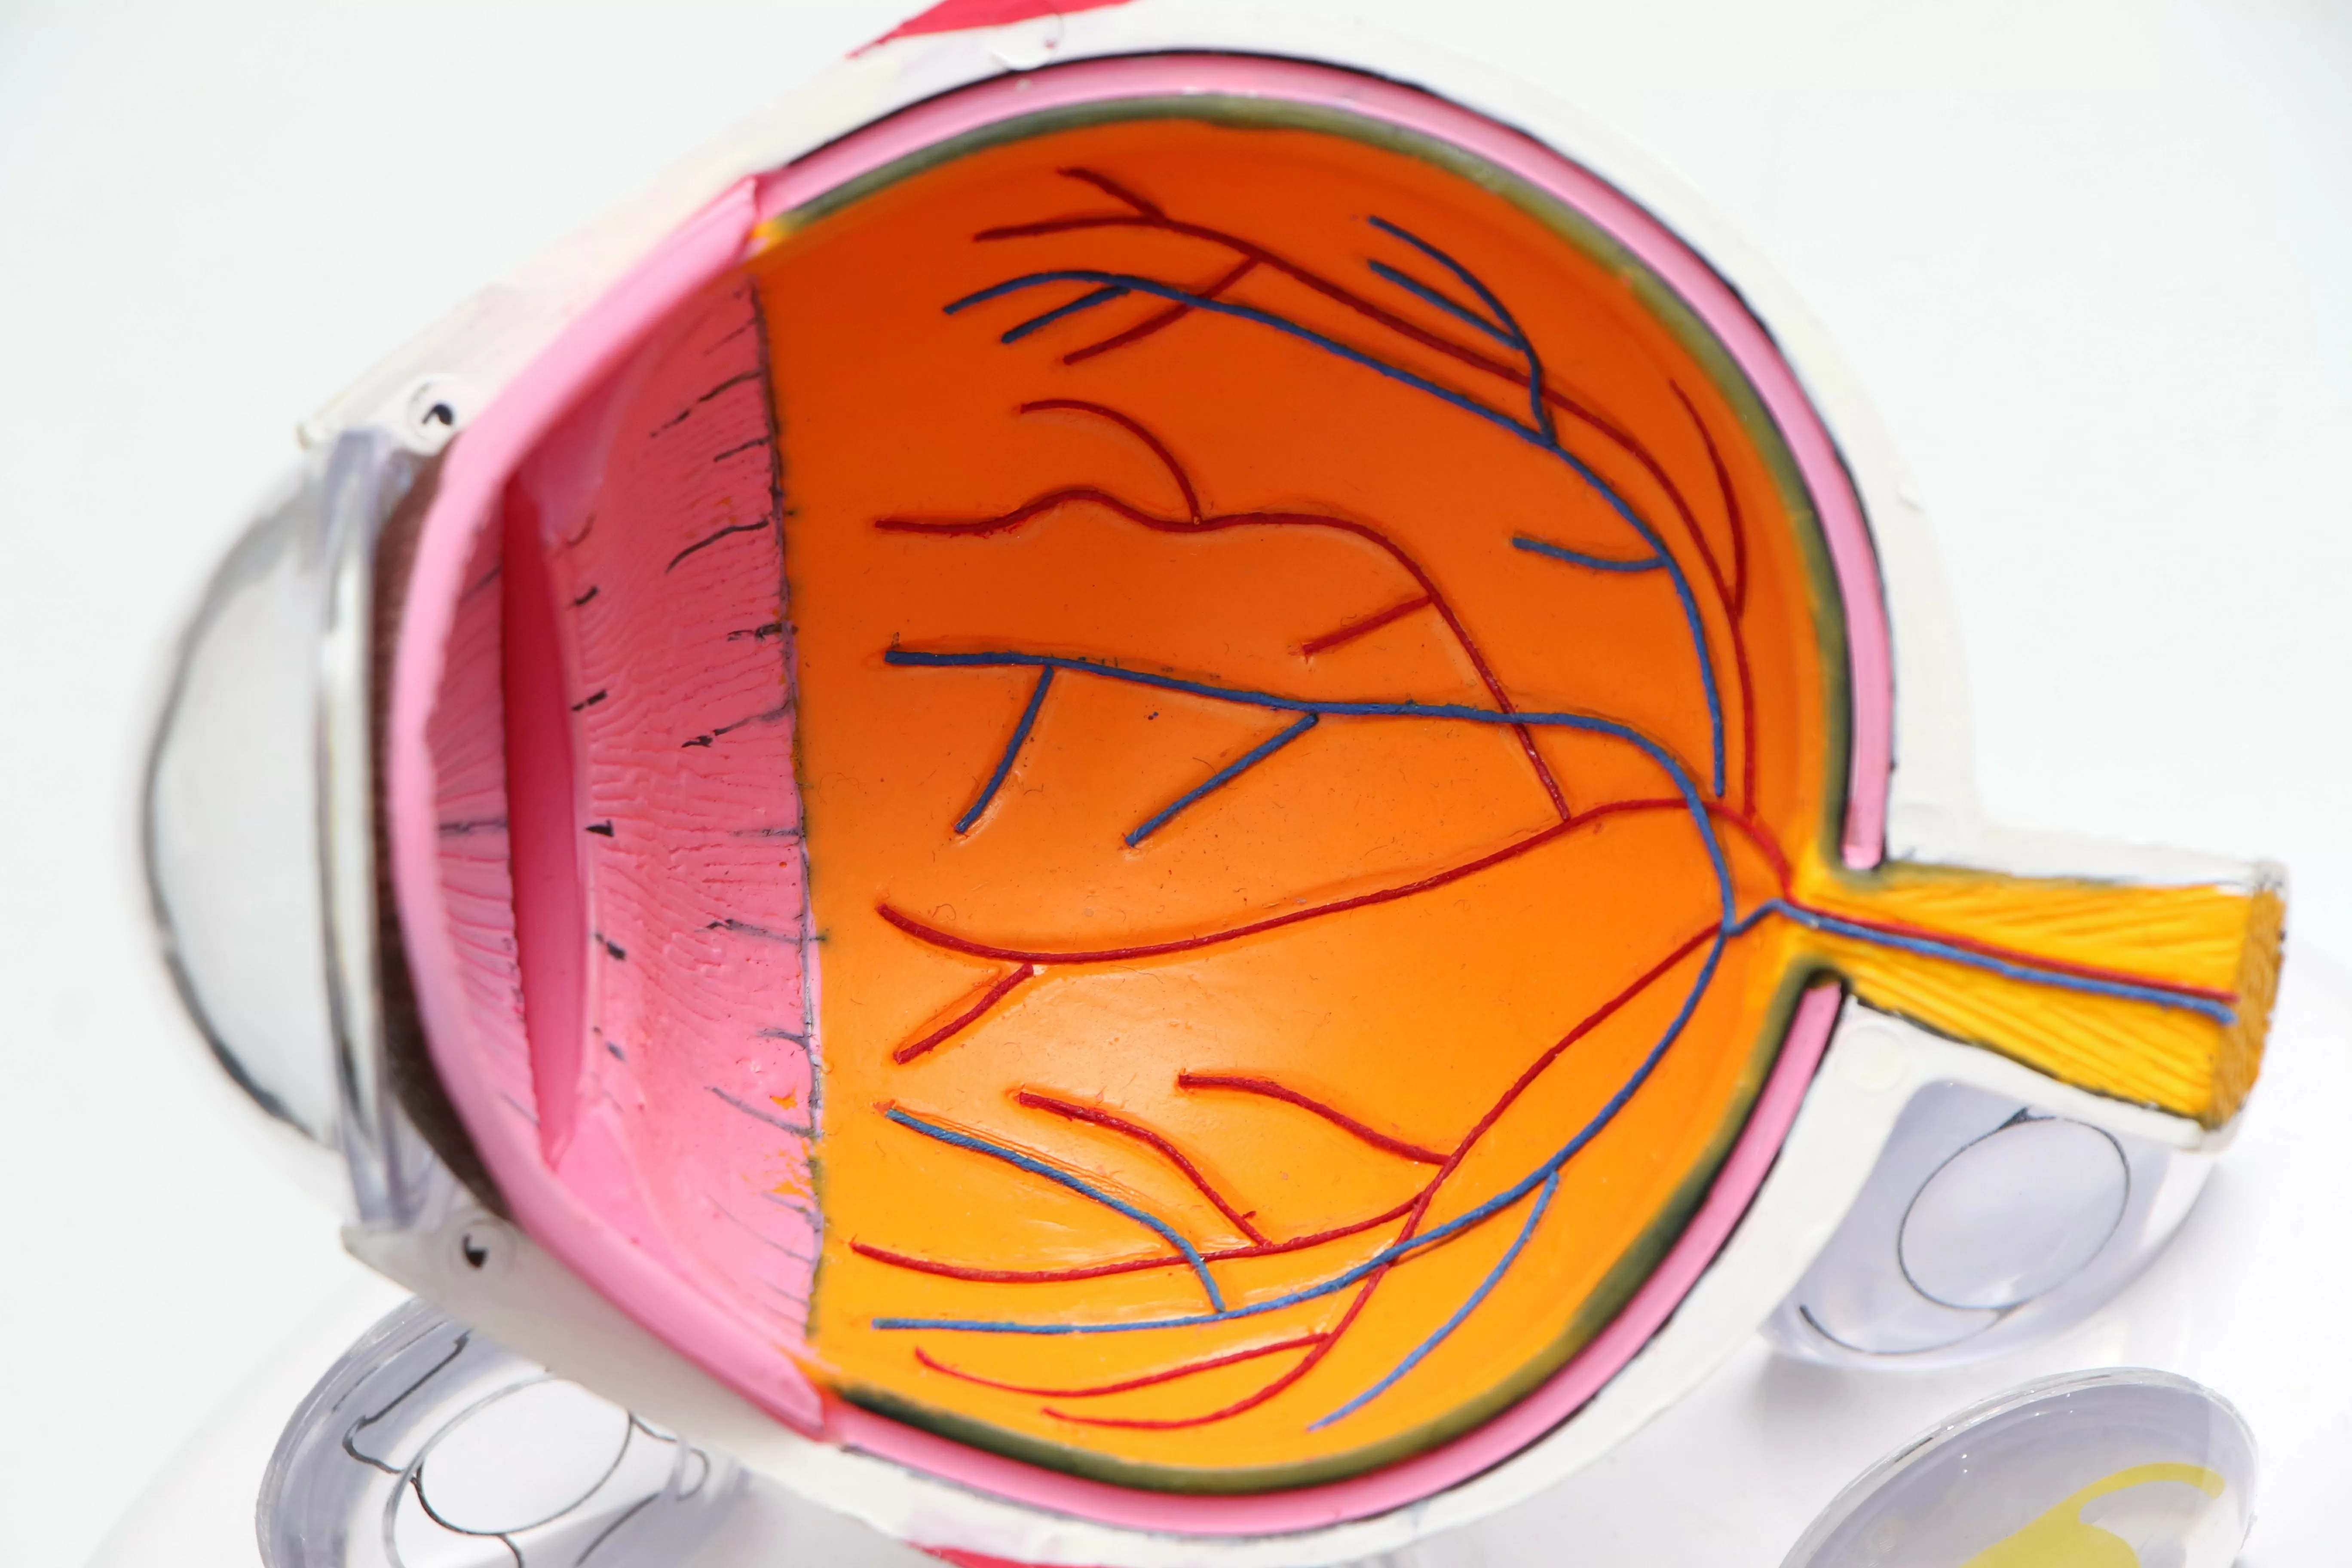 Retinografia e fluorangiografia: esami utili per la diagnosi di patologie vascolari dell'occhio